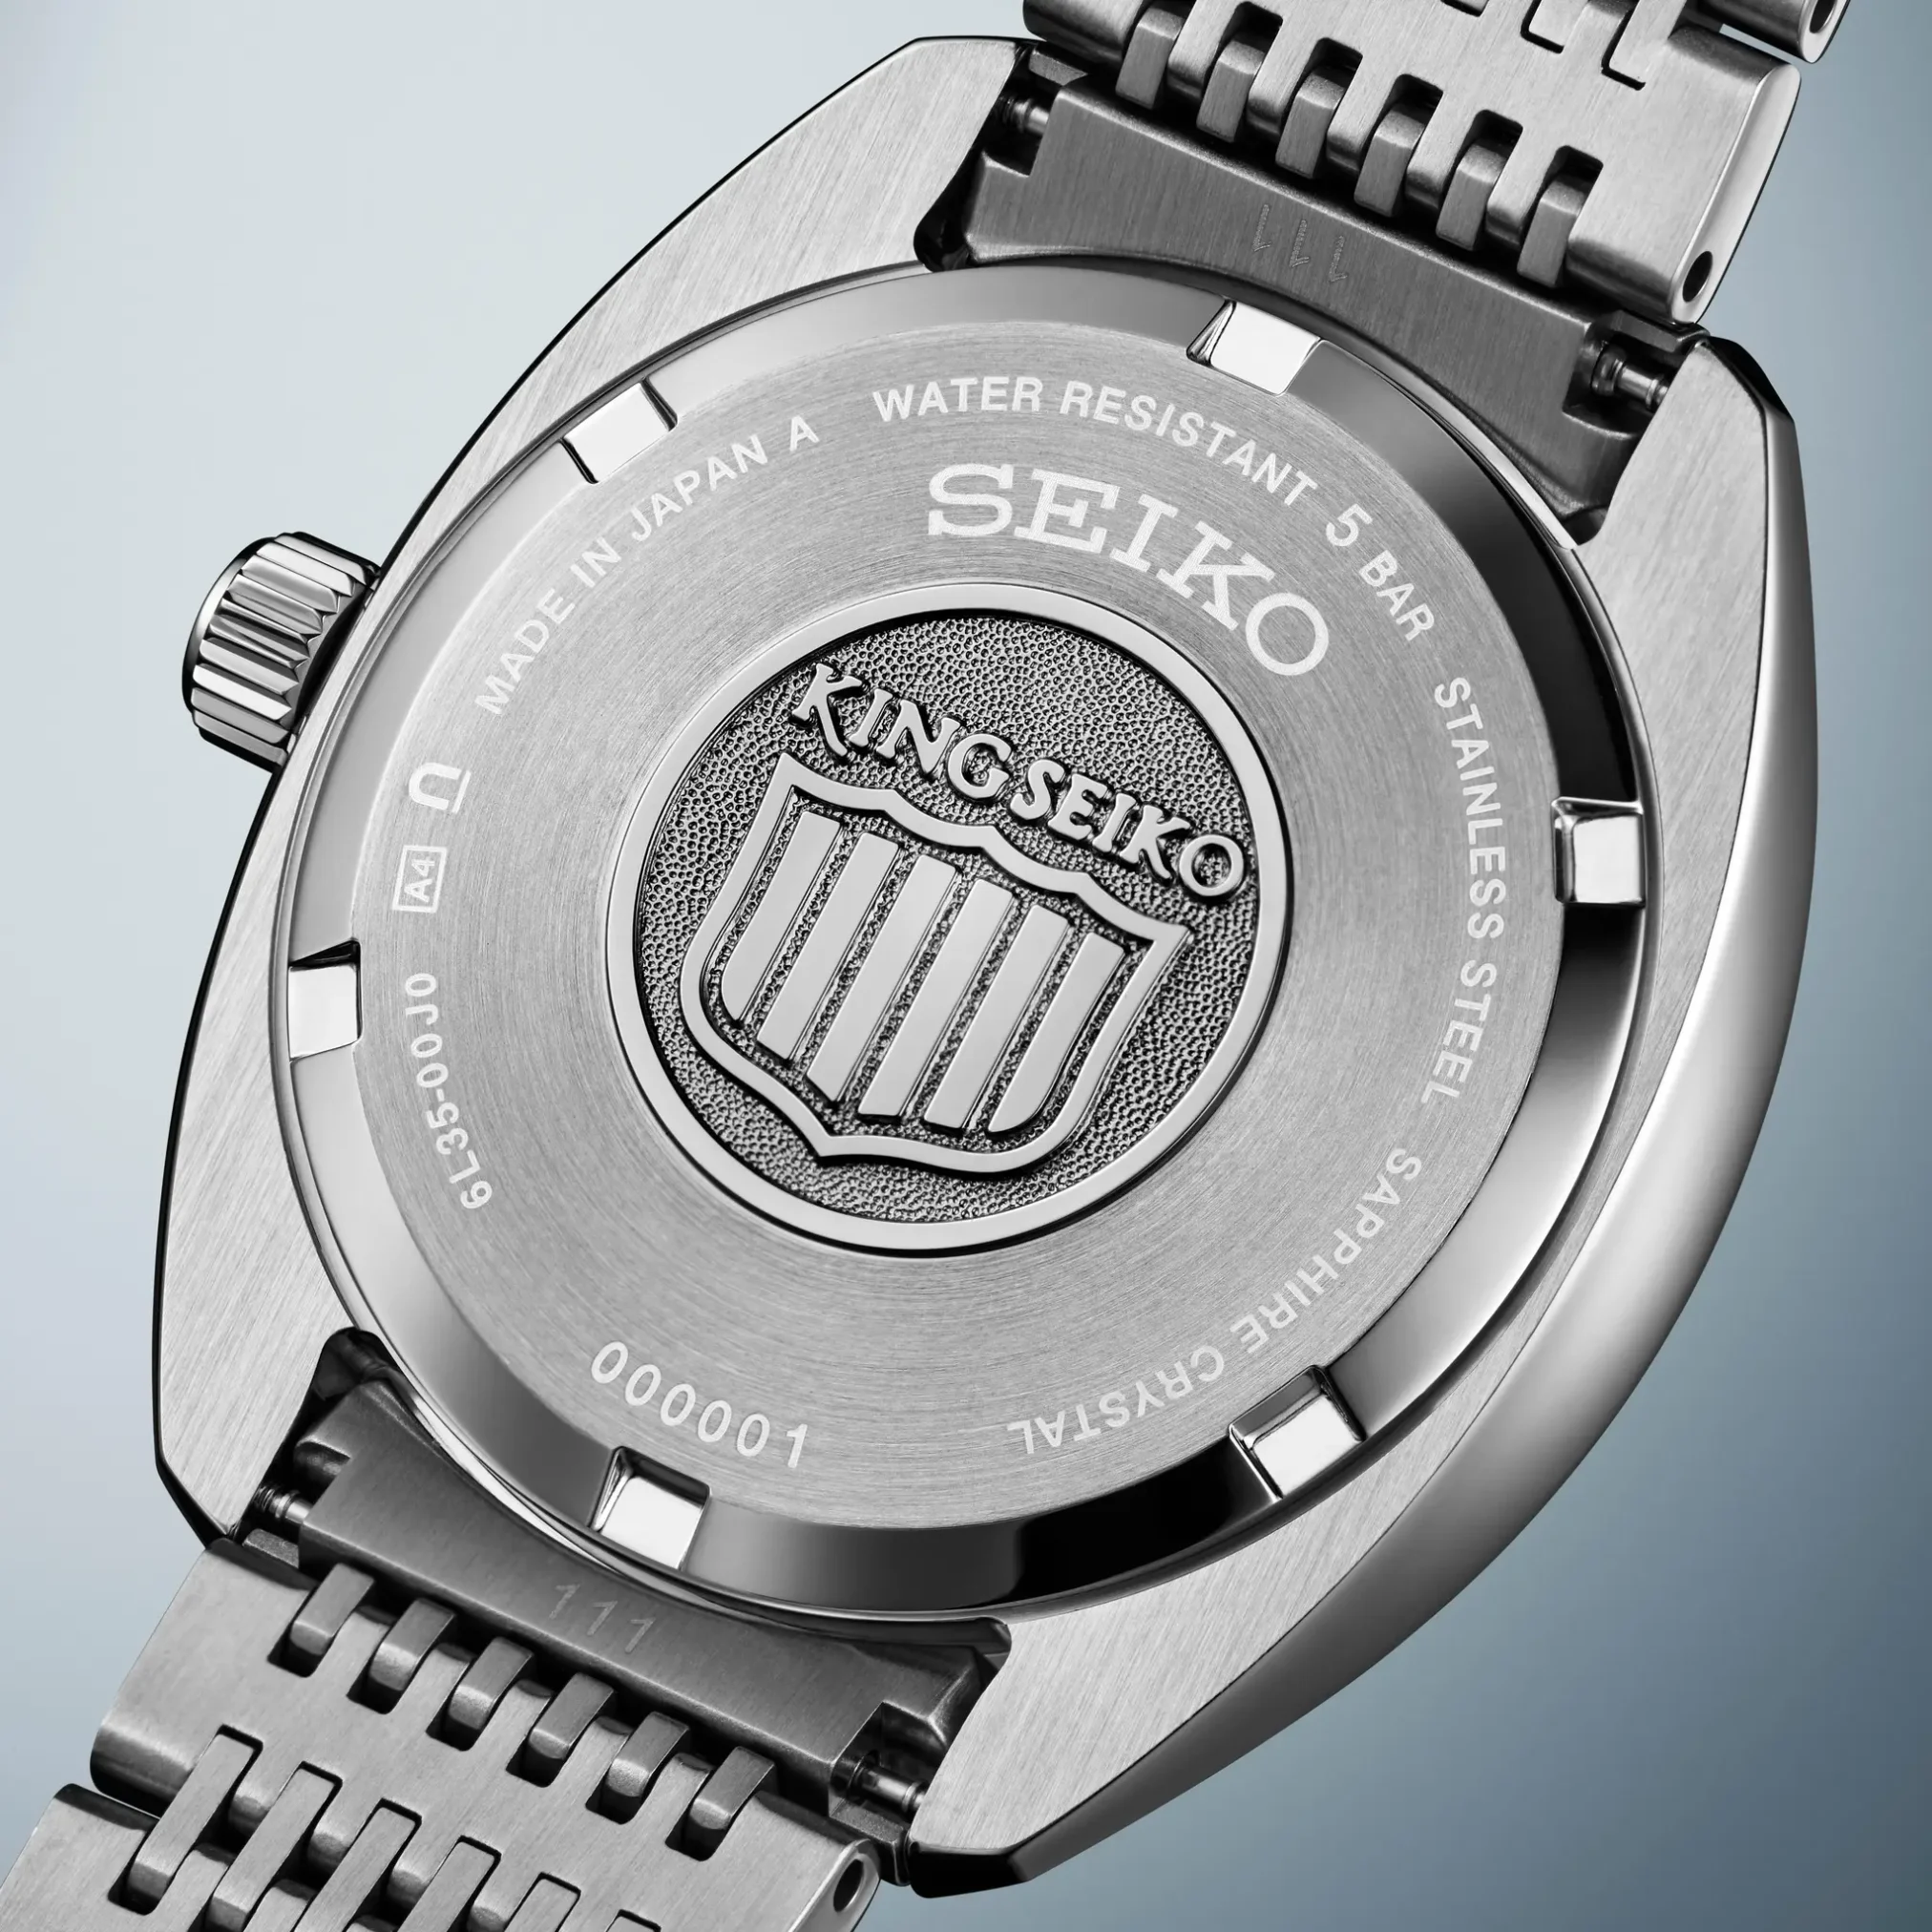 Đồng hồ King Seiko KS1969 Automatic SDKA017 (SJE109) với mặt số màu bạc. Dây đeo bằng thép. Thân vỏ bằng thép.